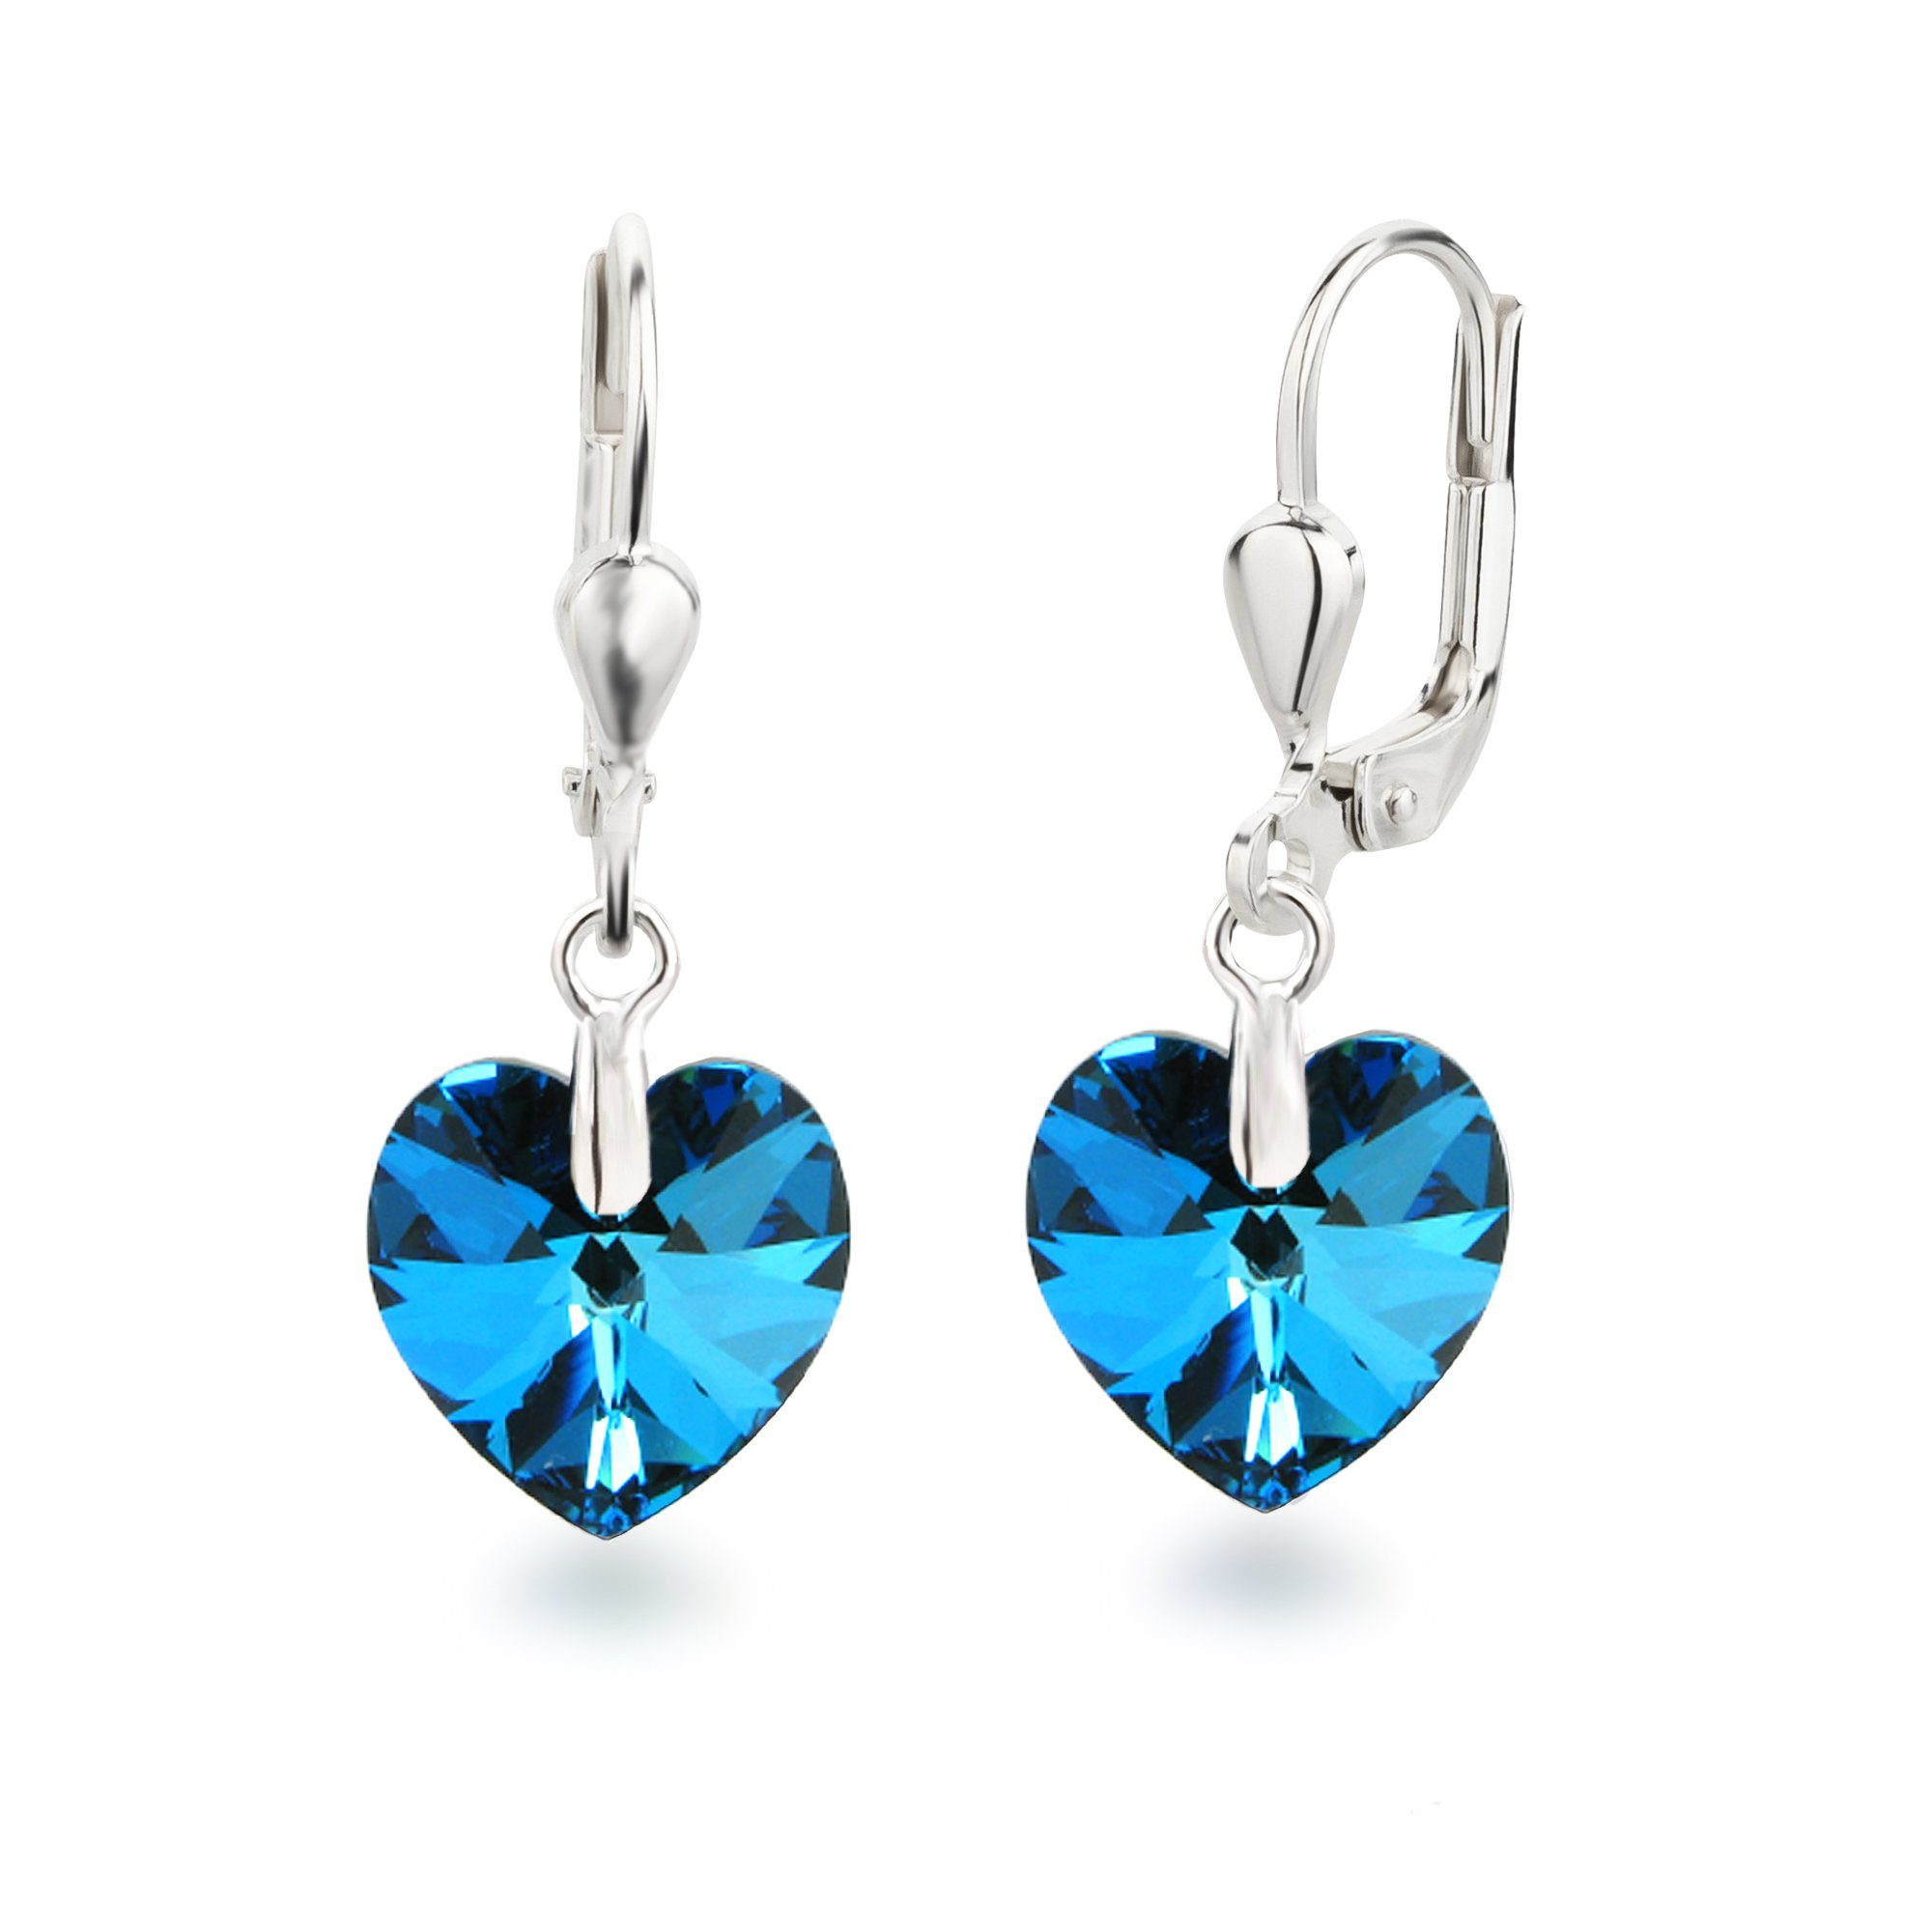 Schöner-SD Paar Ohrhänger Ohrringe hängend mit Herz Kristall 10mm für Damen und Mädchen, 925 Silber Bermuda Blue